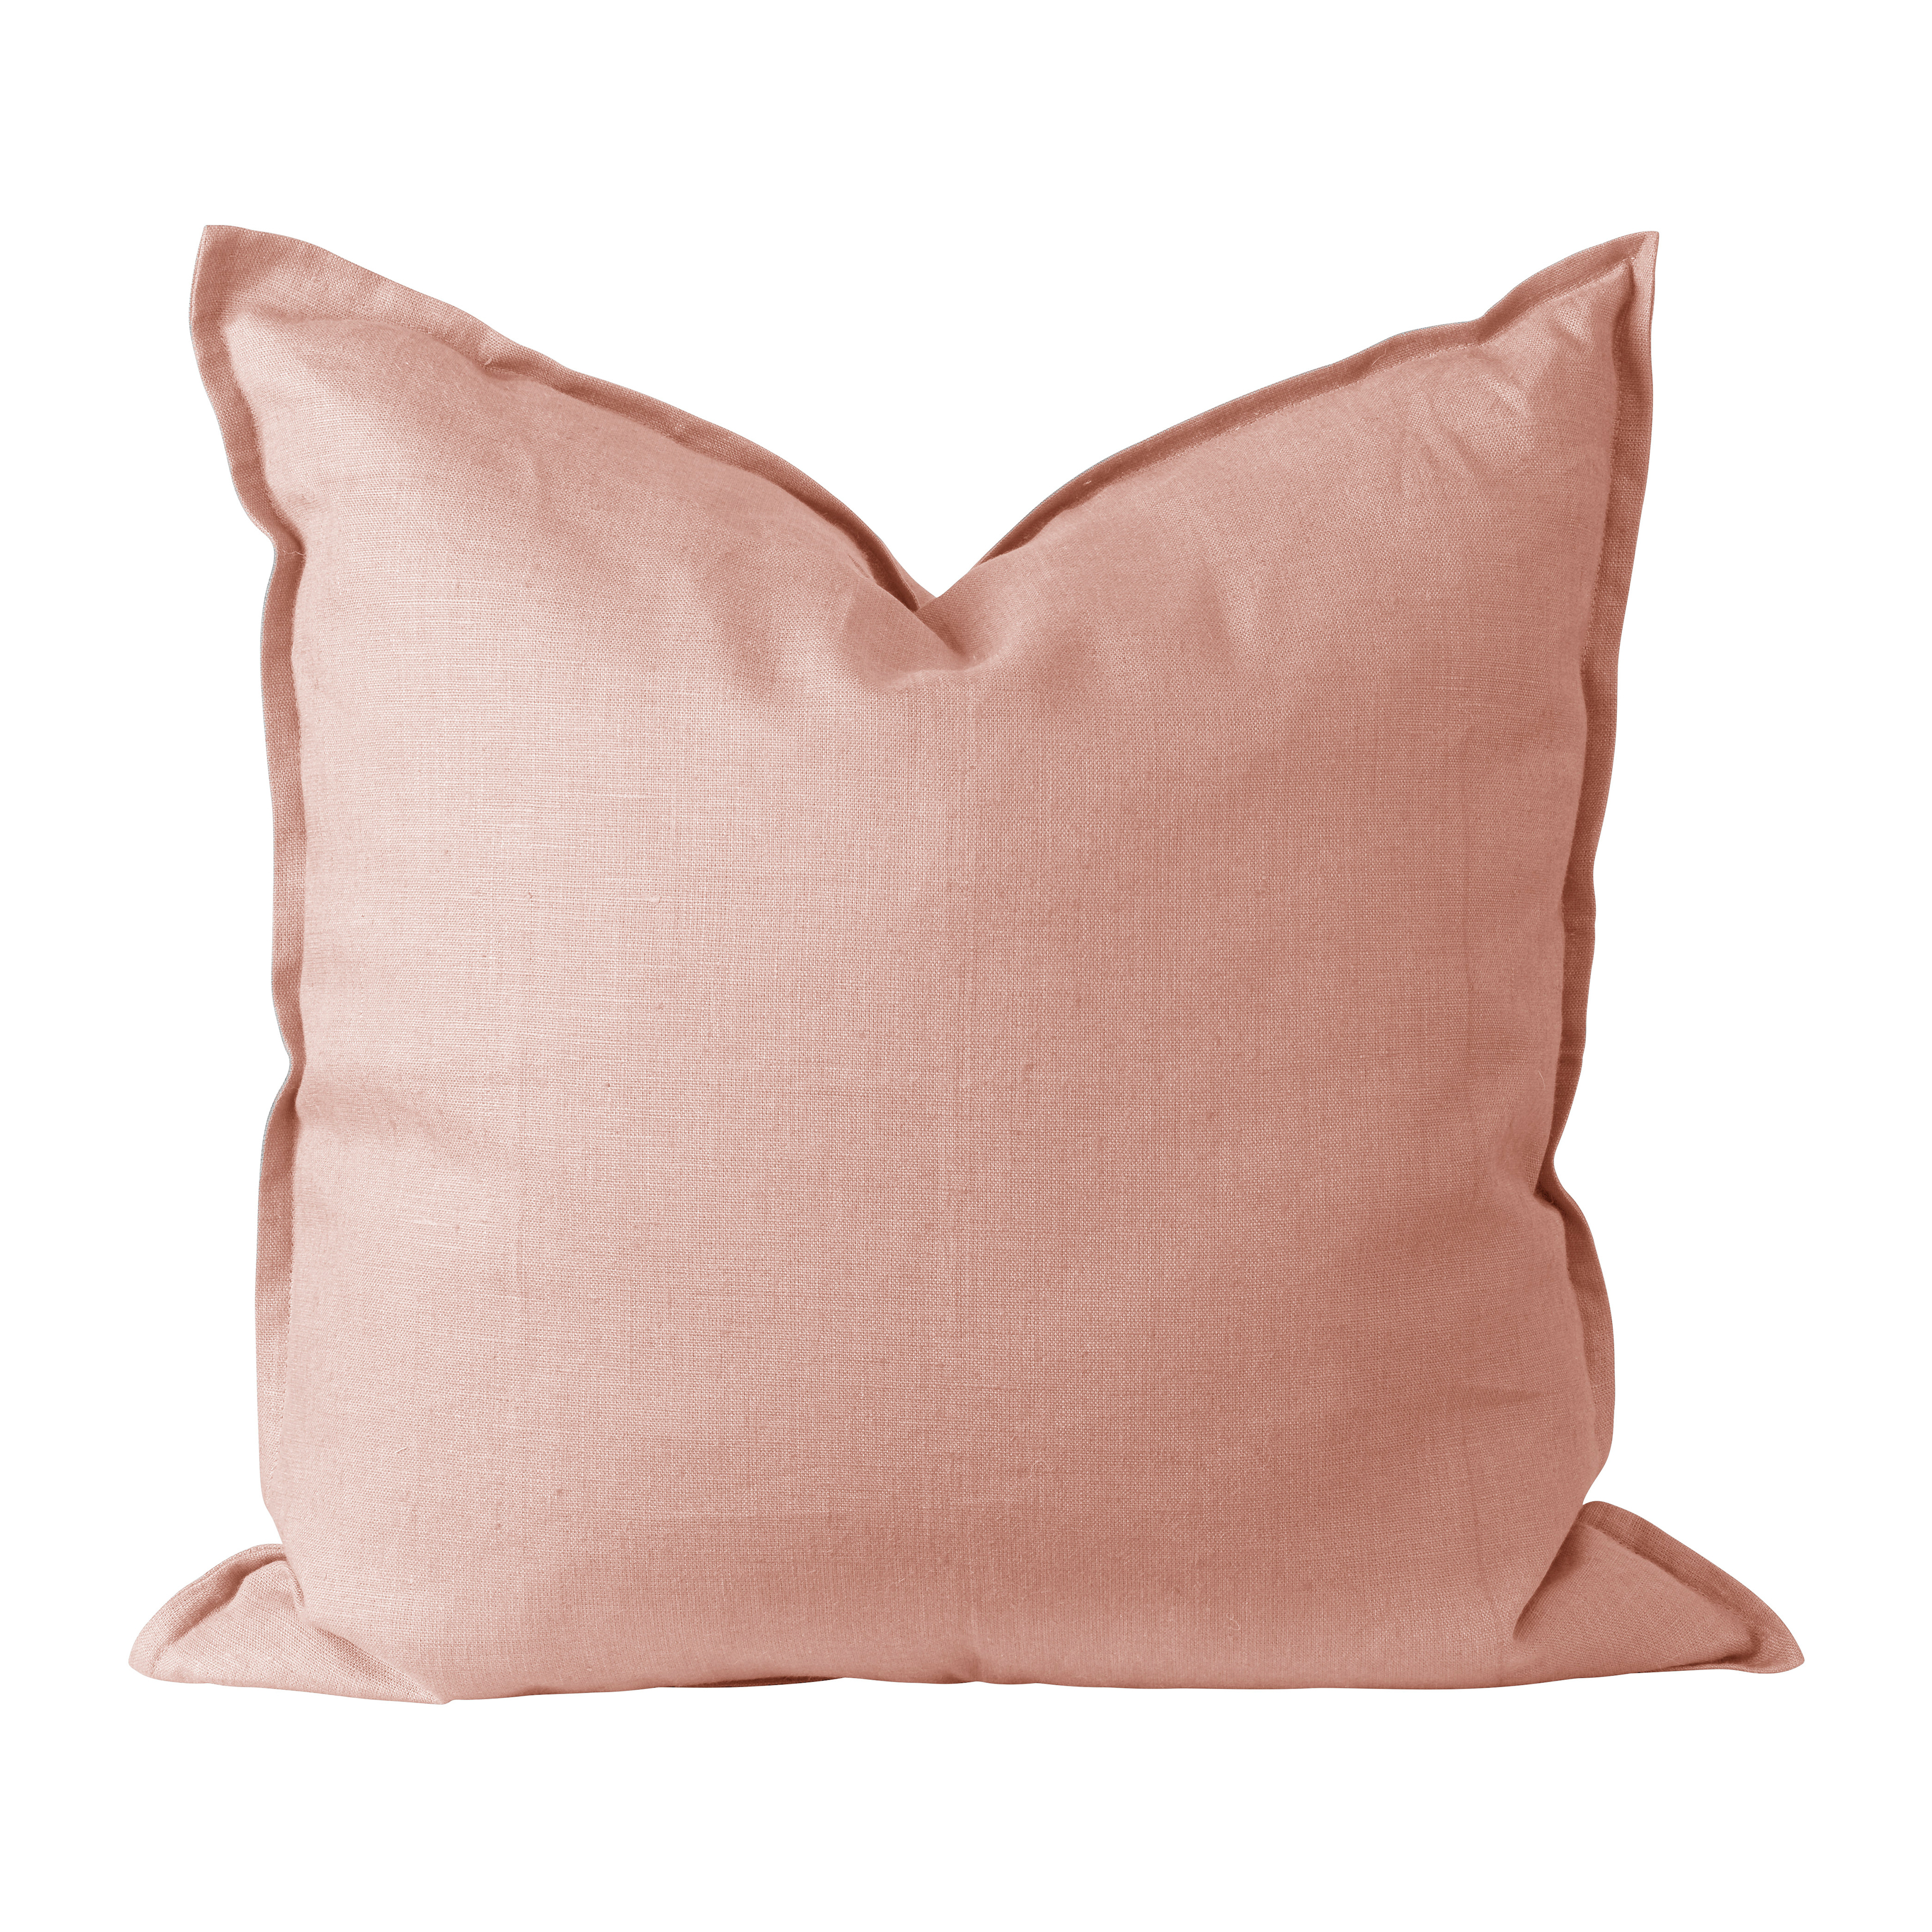 Telpes telas - Cojín de lactancia funda + relleno 50 x 60 cm. rosa